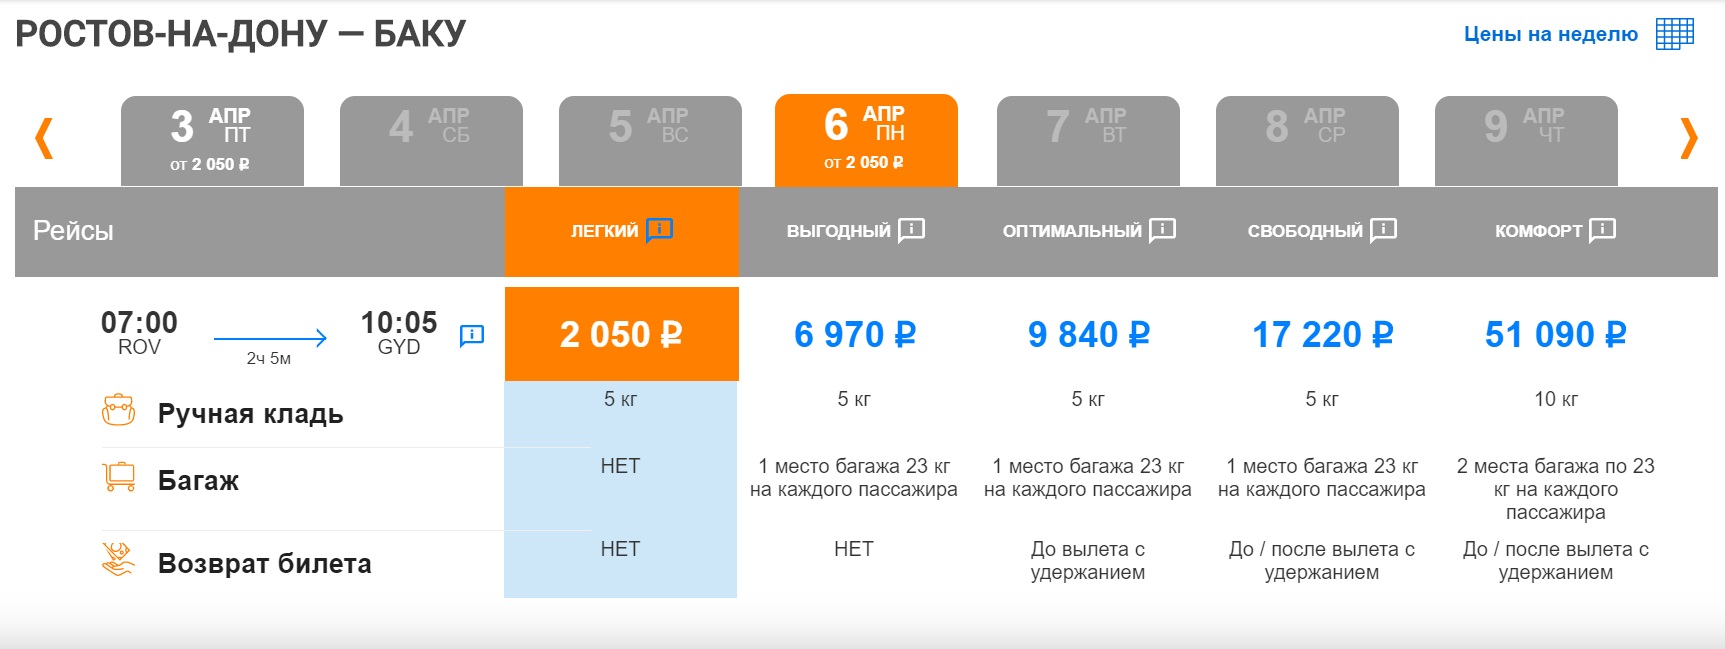 Симферополь псков авиабилеты прямые рейсы расписание билет на самолет цены посмотреть сравнить